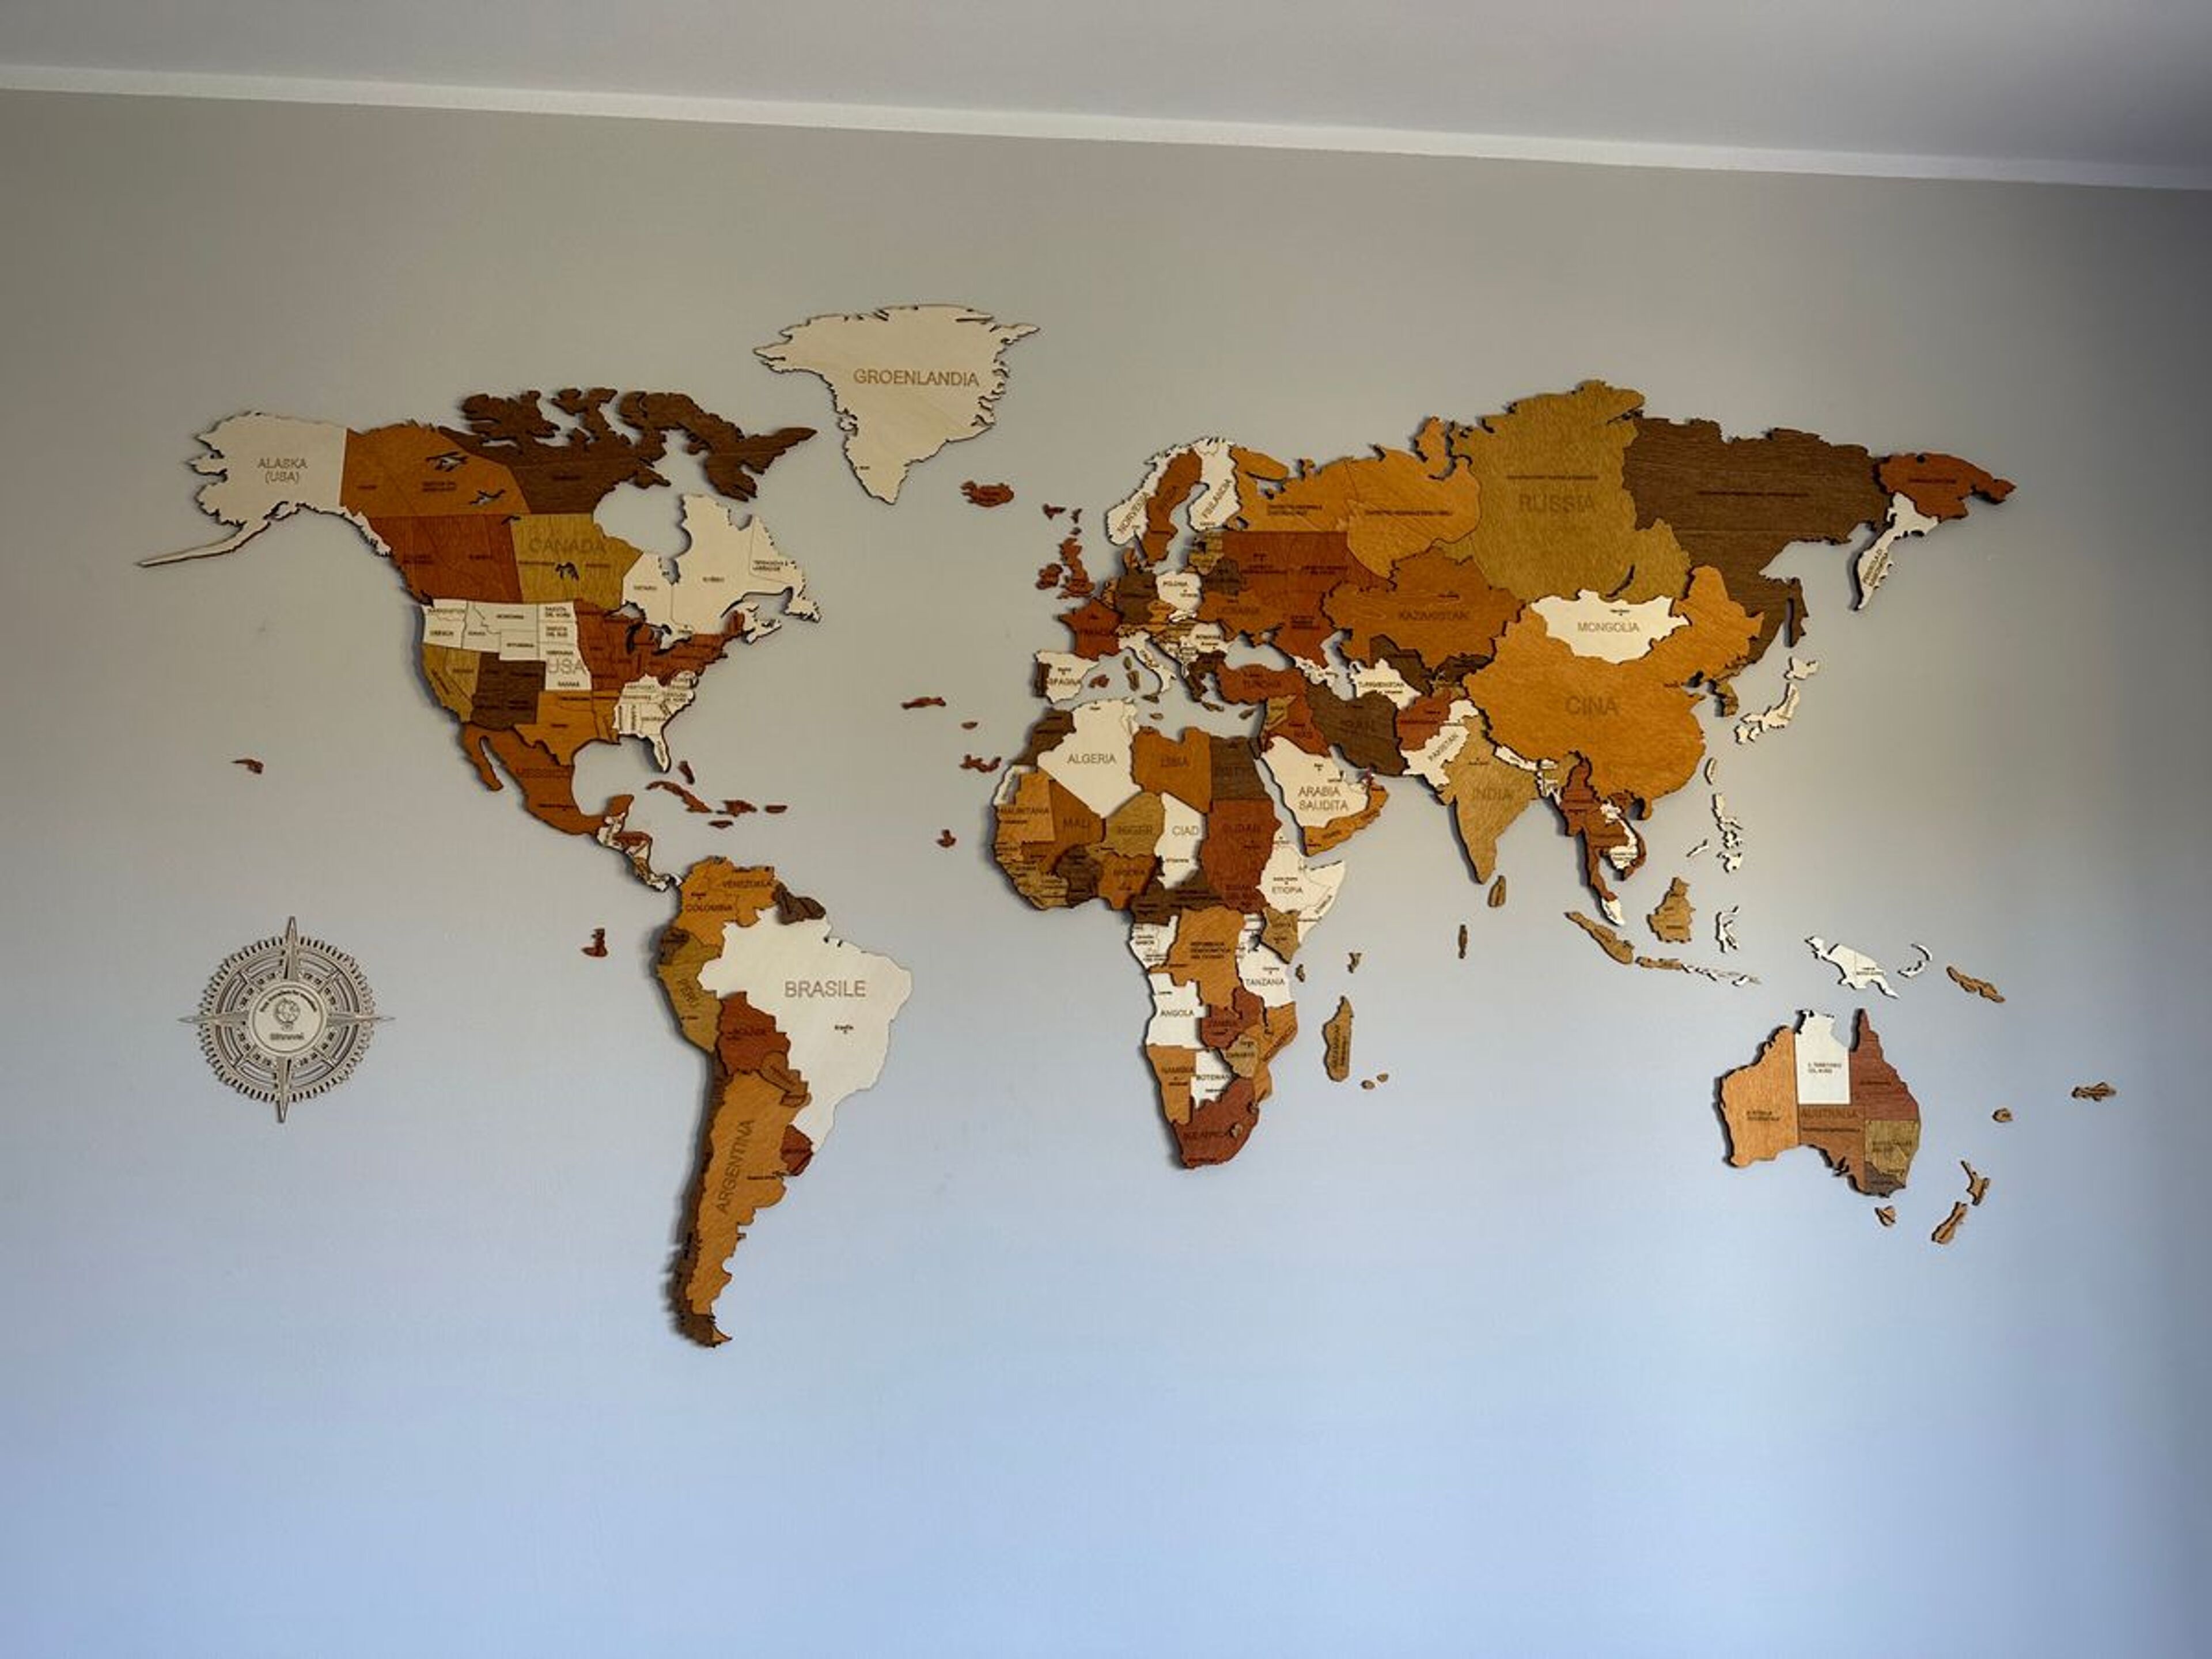 Reseña de Mapa del mundo de madera - imagen de Marco Chiola